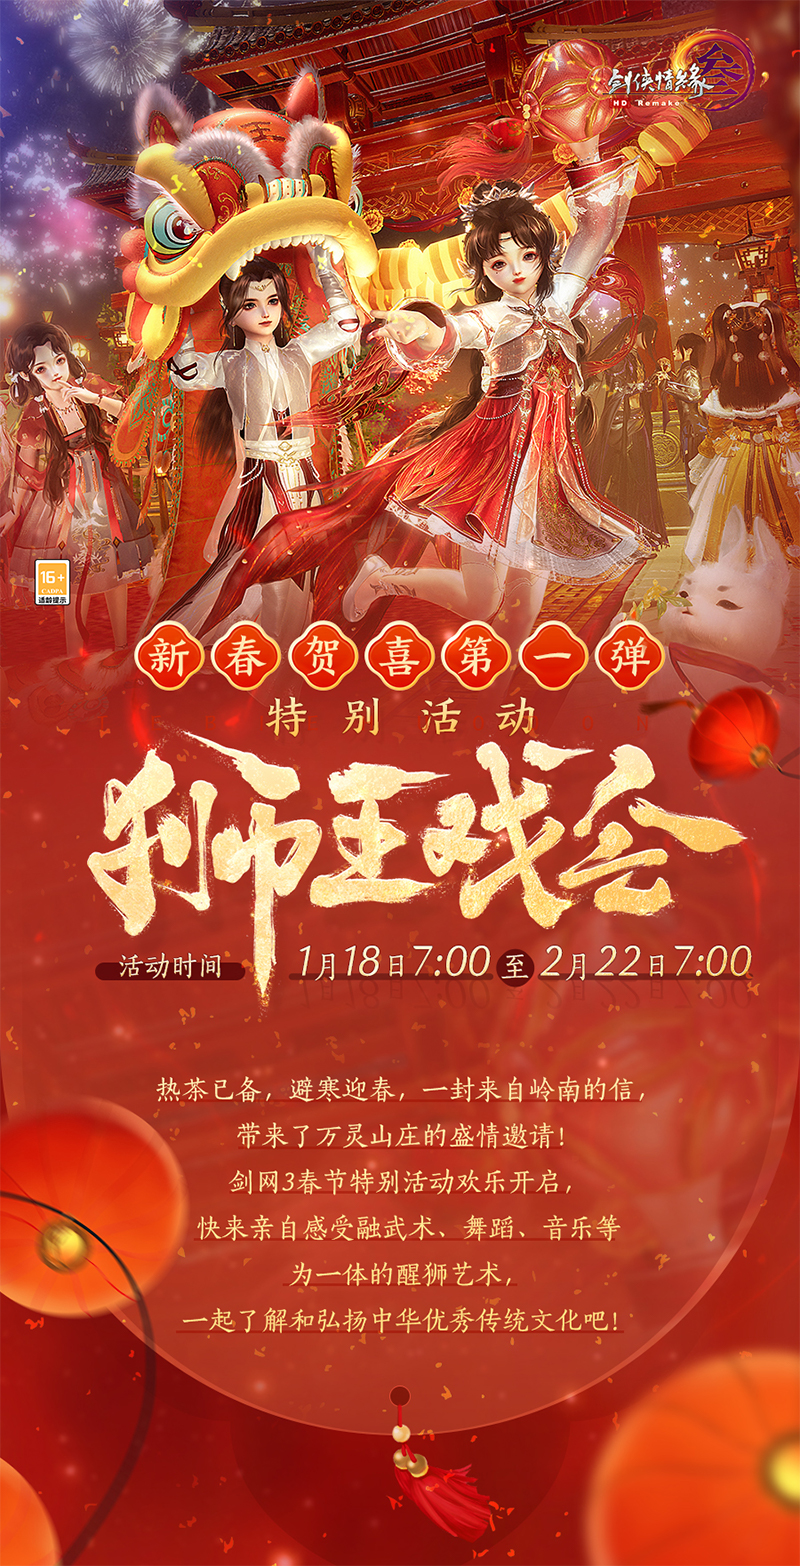 弘揚嶺南醒獅傳統文化 《劍網3》新春賀歲特別活動來襲